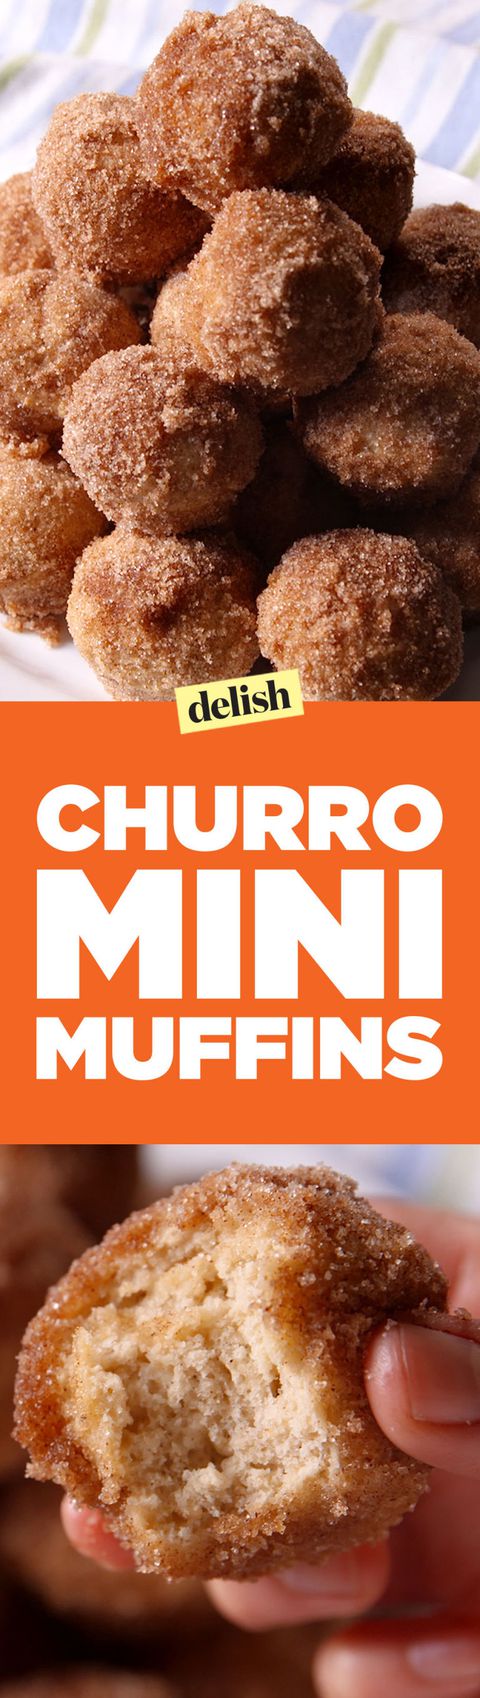 Churro Mini Muffins Pinterest